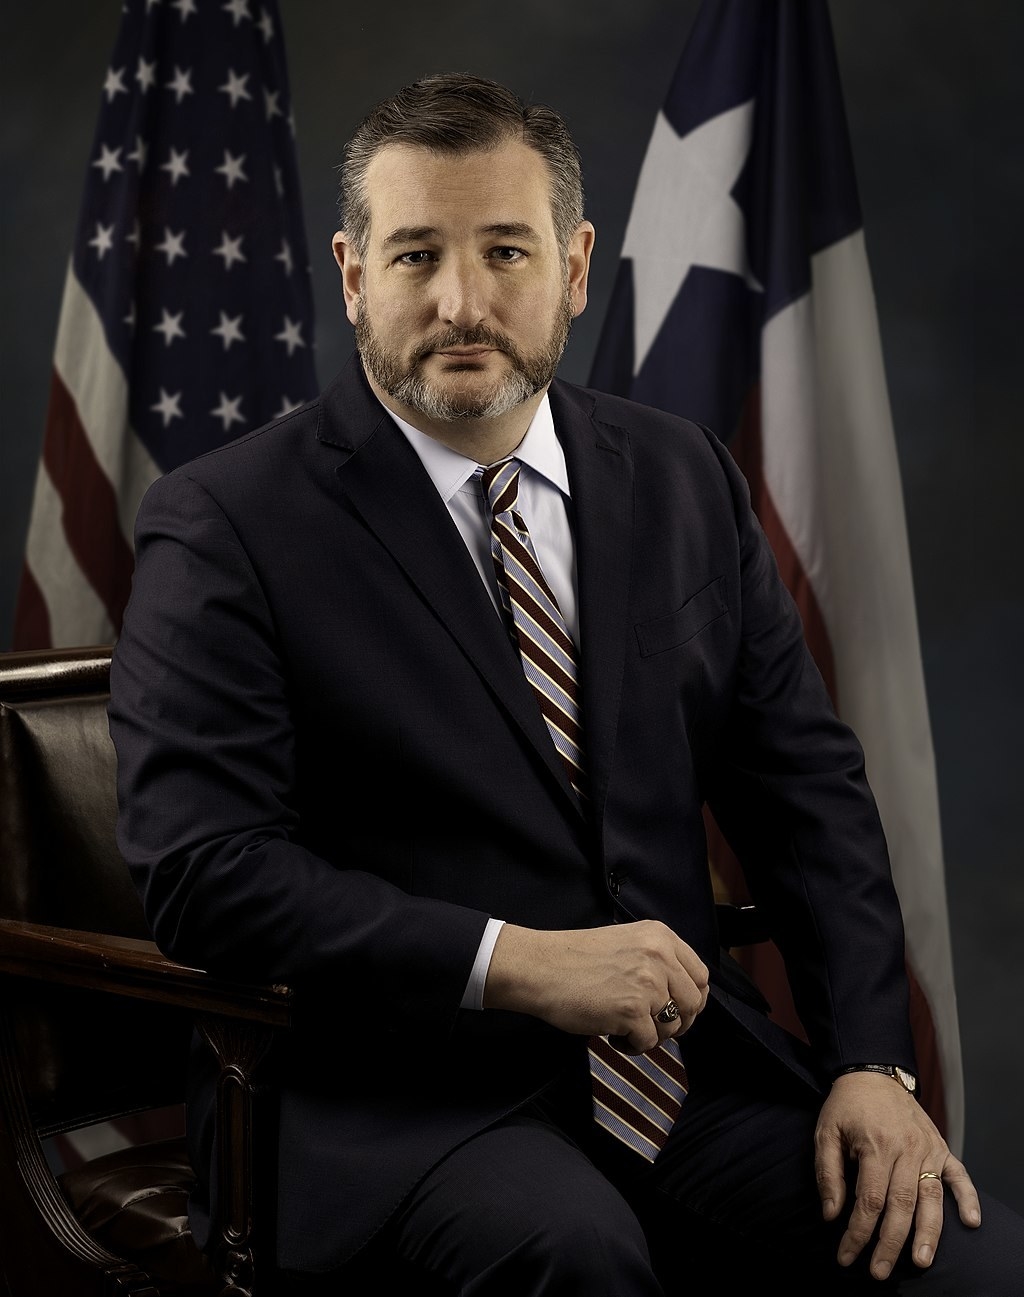 Ted Cruz poses in the U.S. Senate Photographic Studio